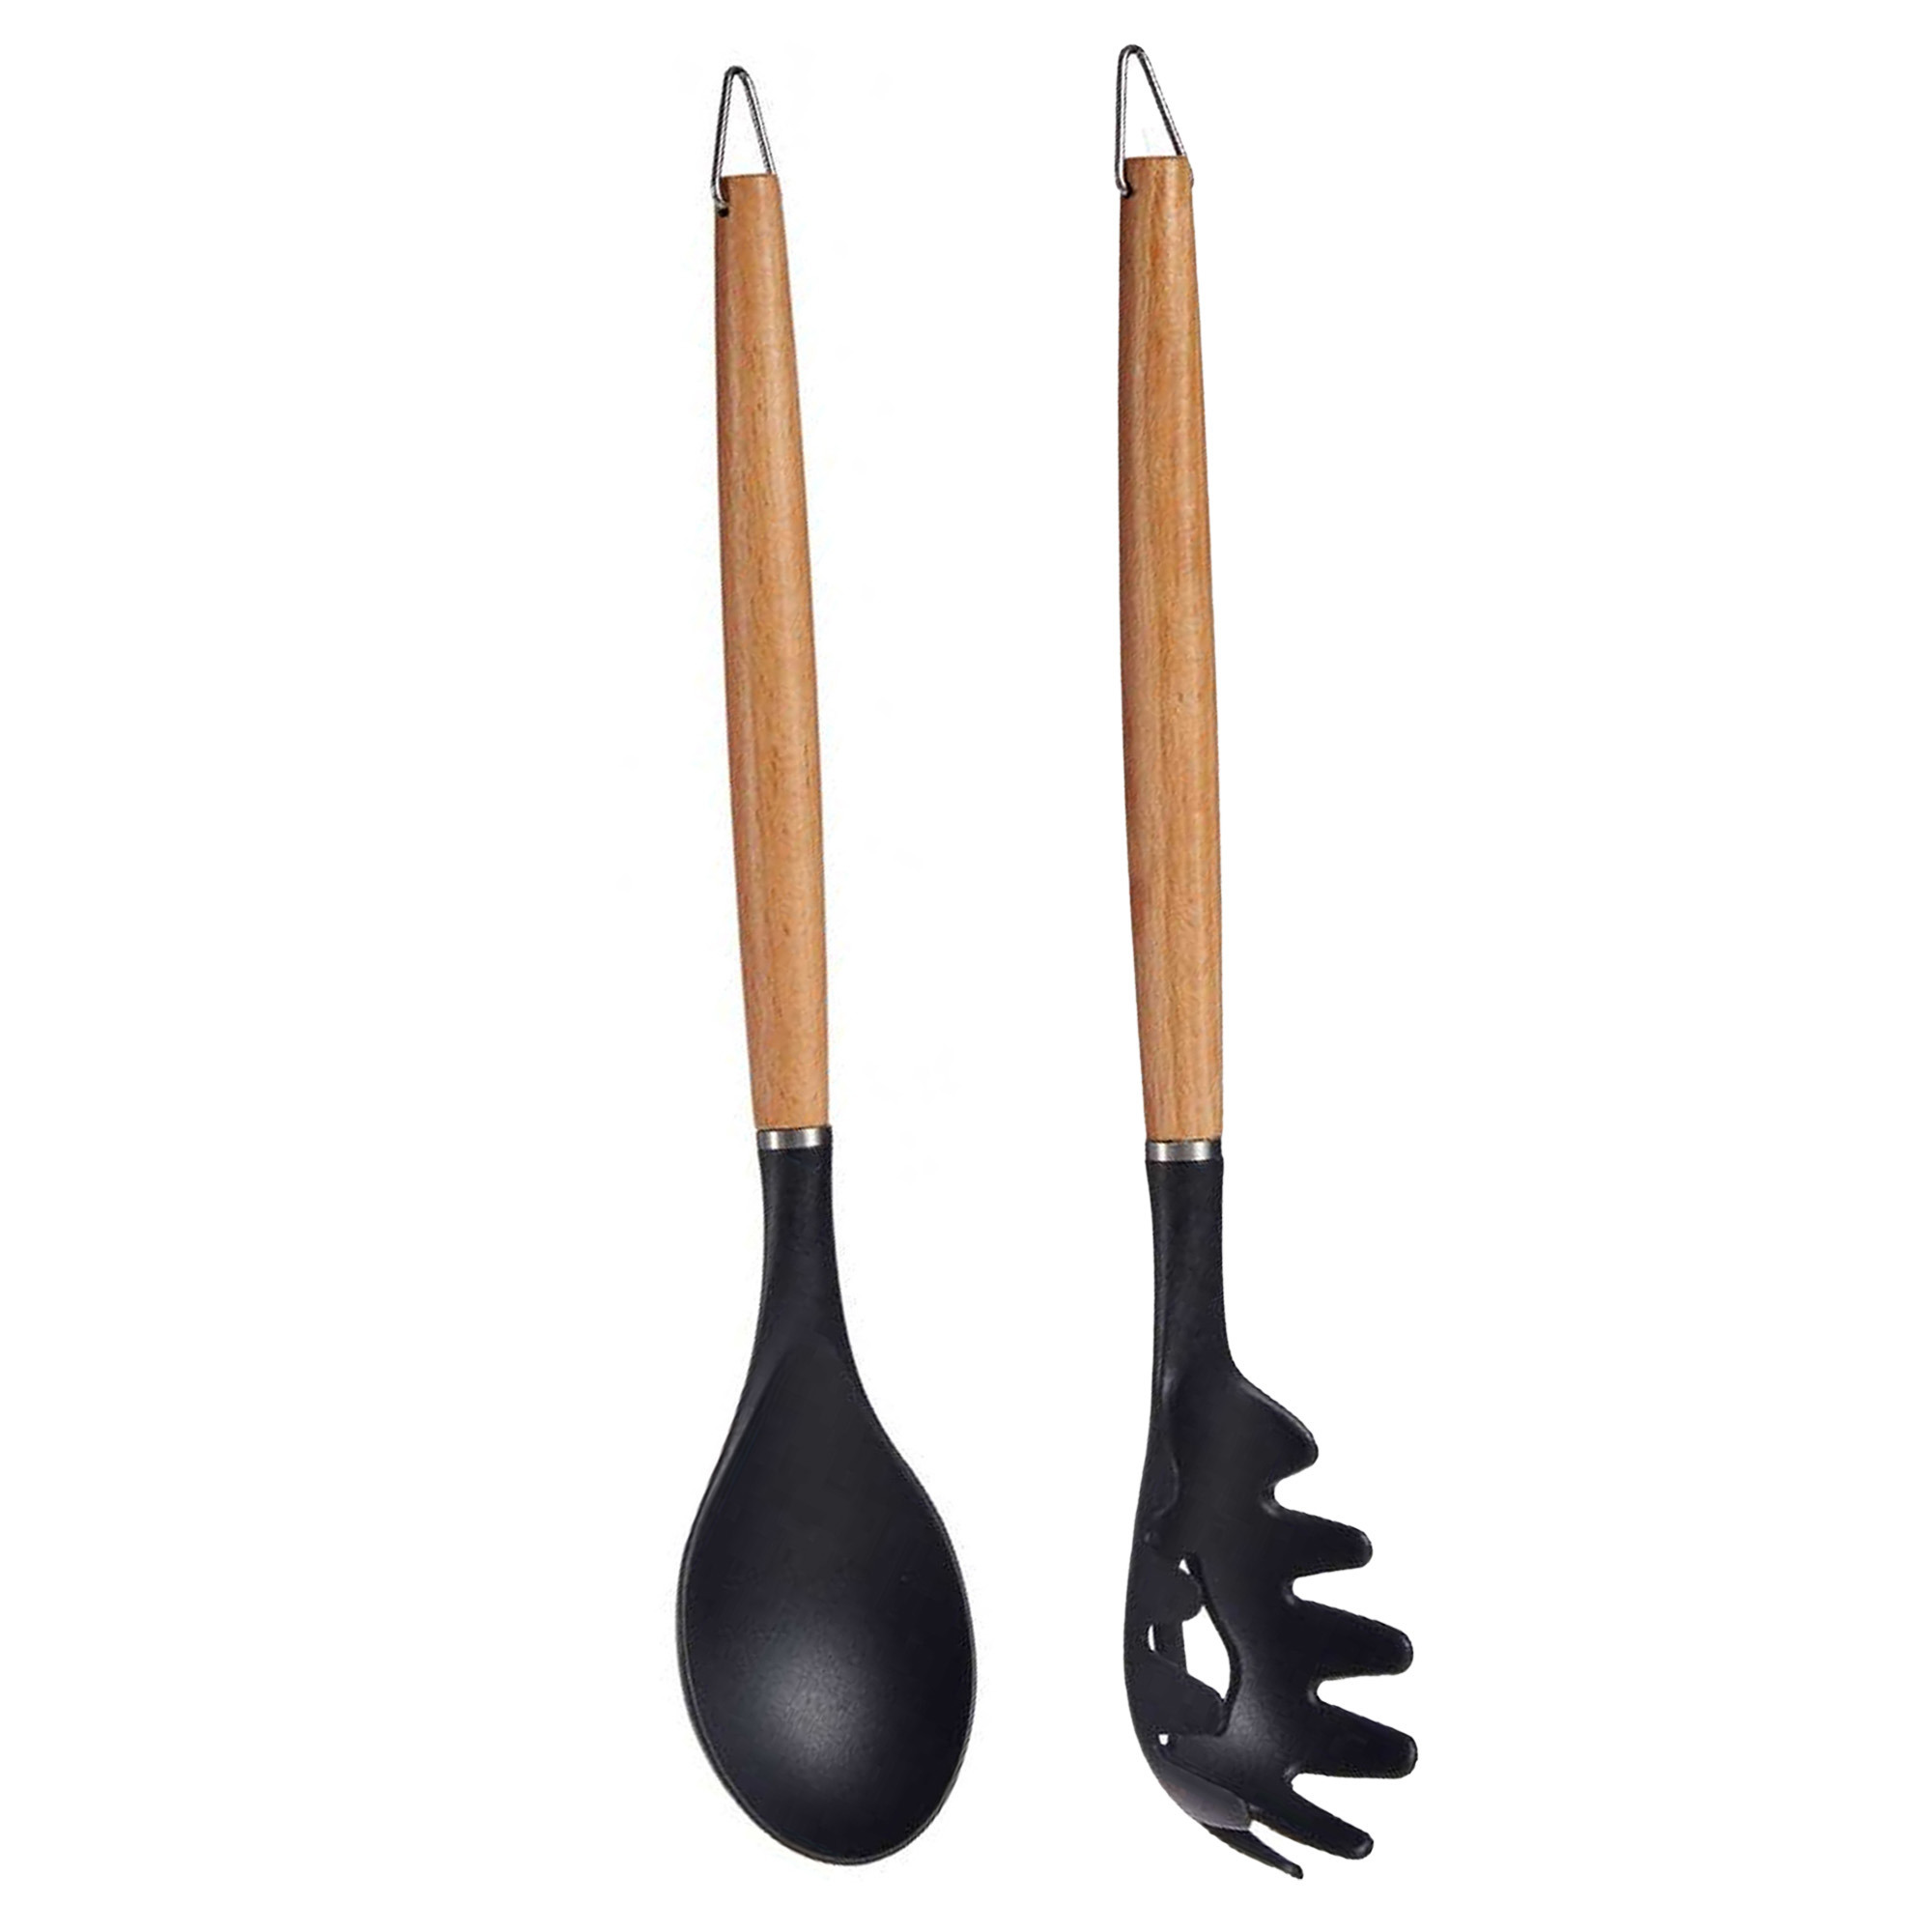 Kook-keuken gerei set van 2x stuks zwart-bruin kunststof-hout keuken-kook accessoires